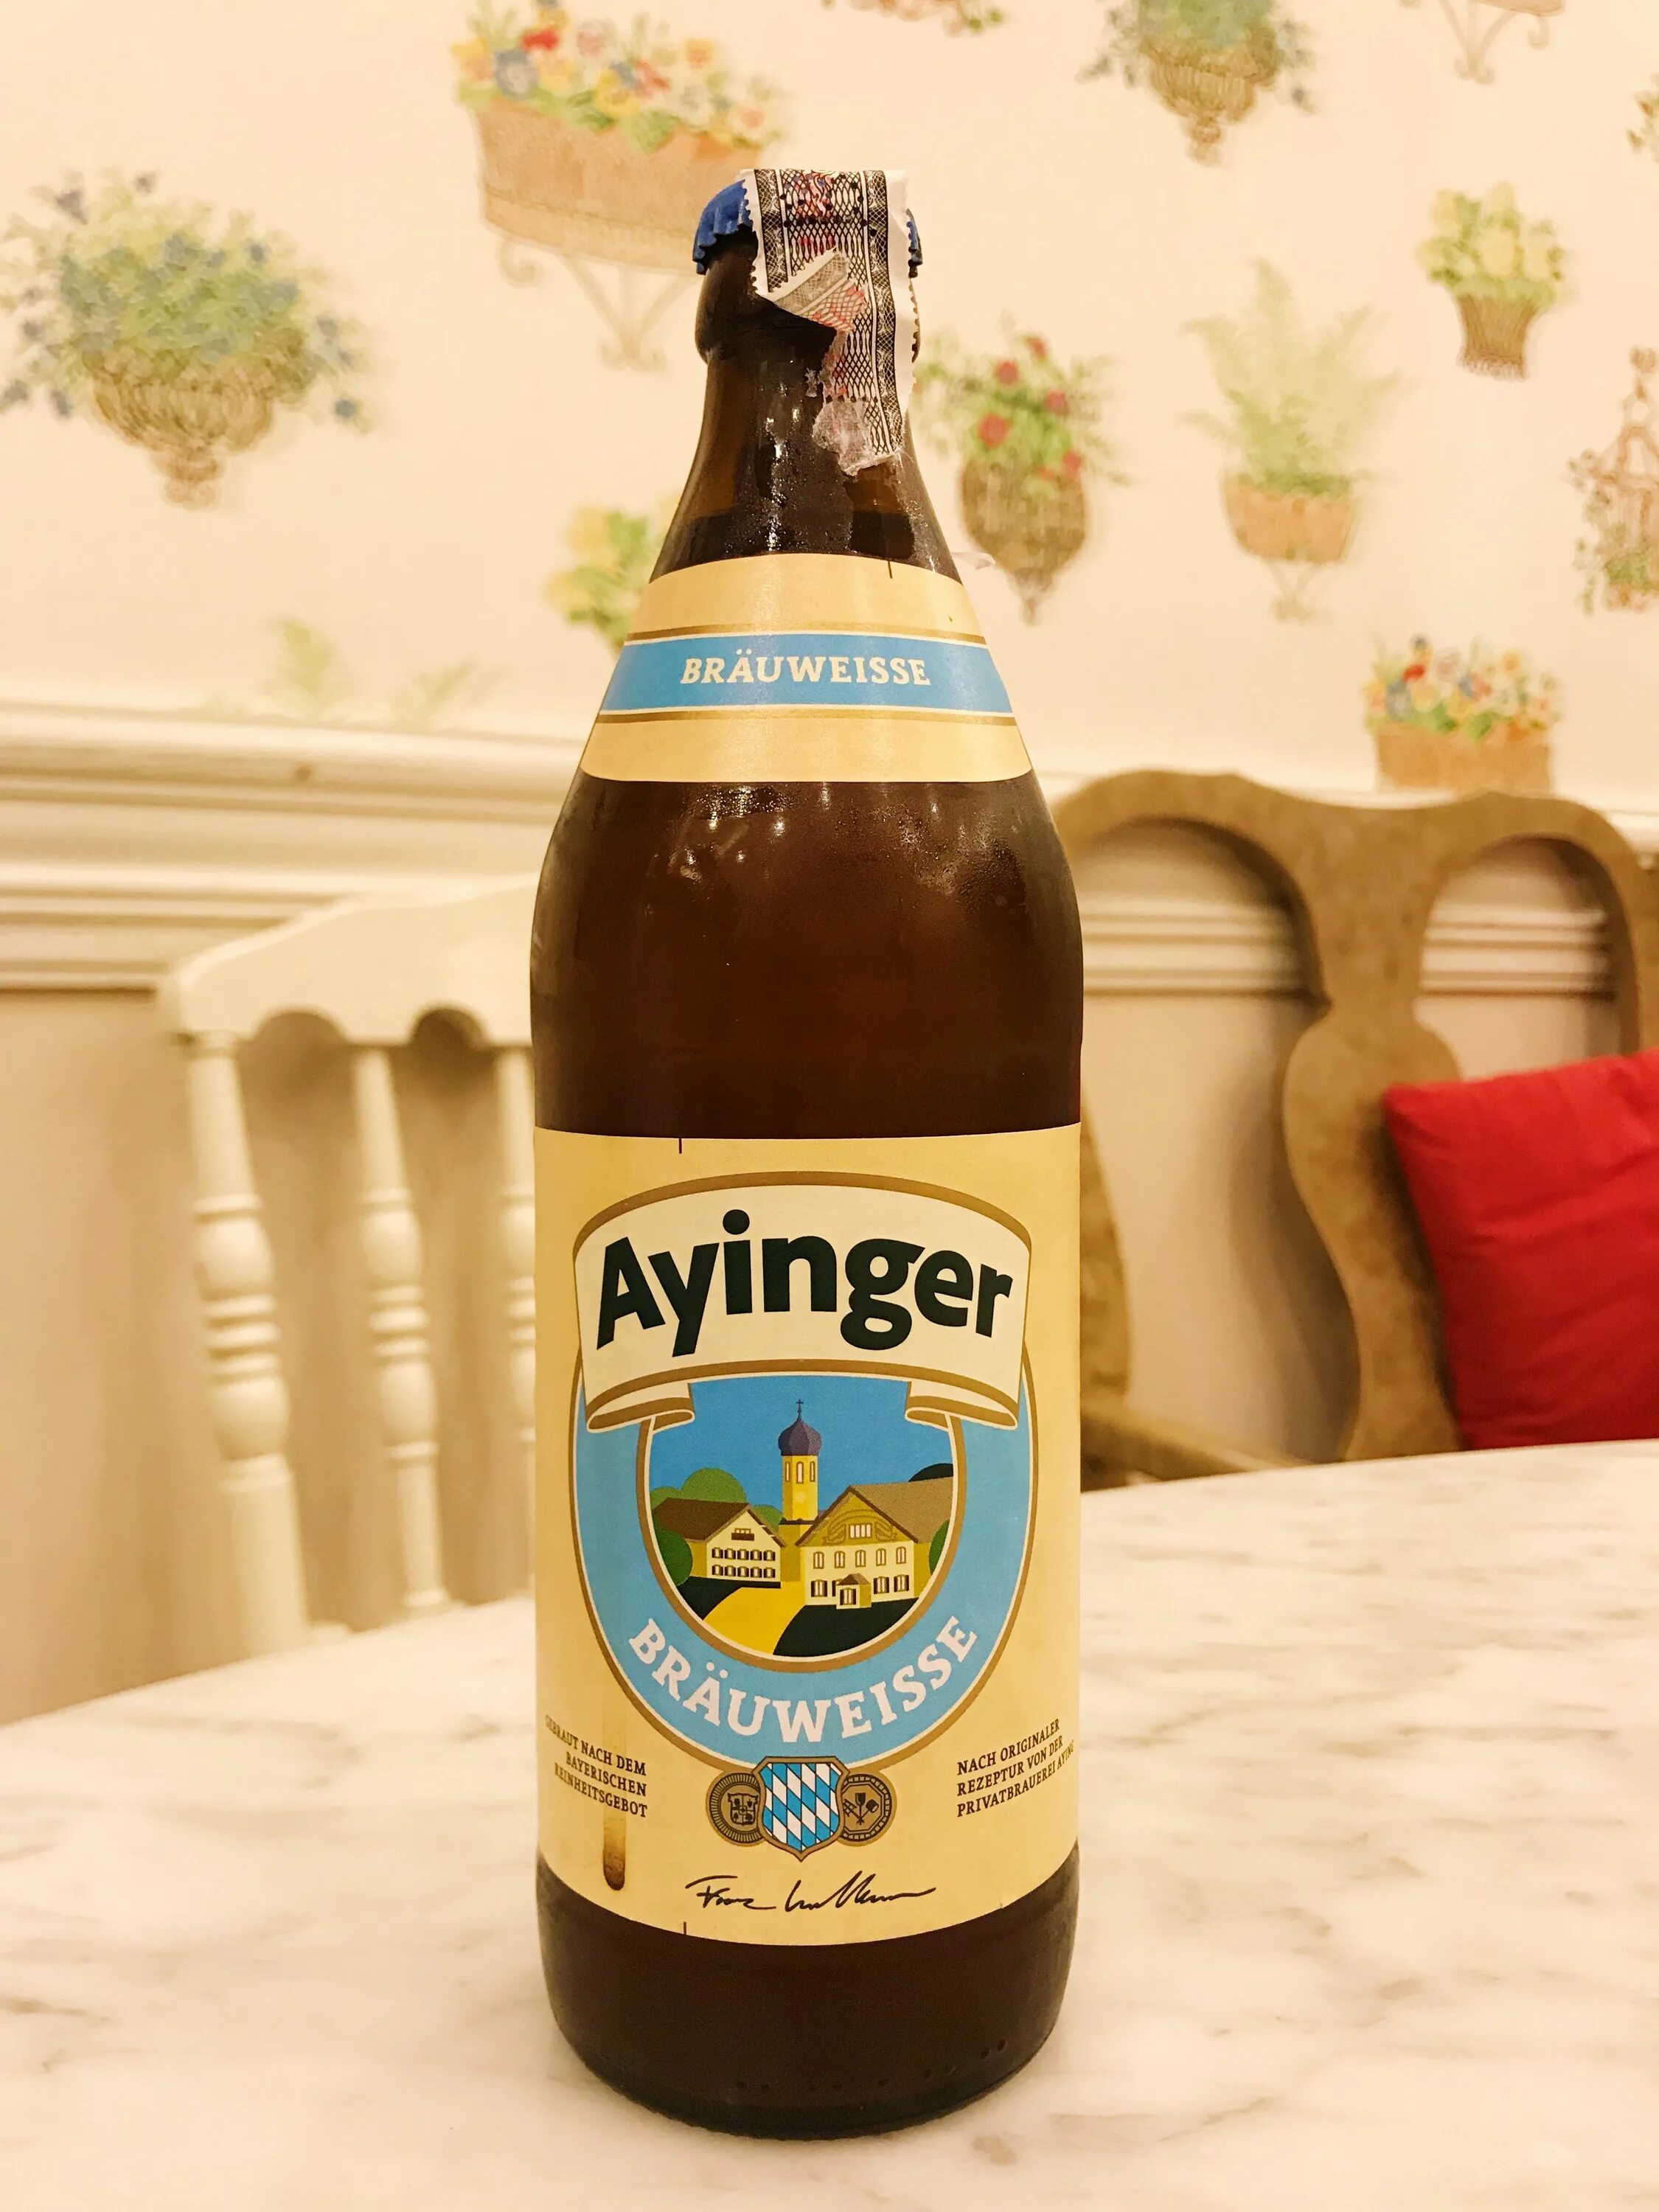 Пиво ayinger купить. Айингер Хель. Айингер Бройвайссе. Айингер лагер Хель. Пиво Ayinger Lager.